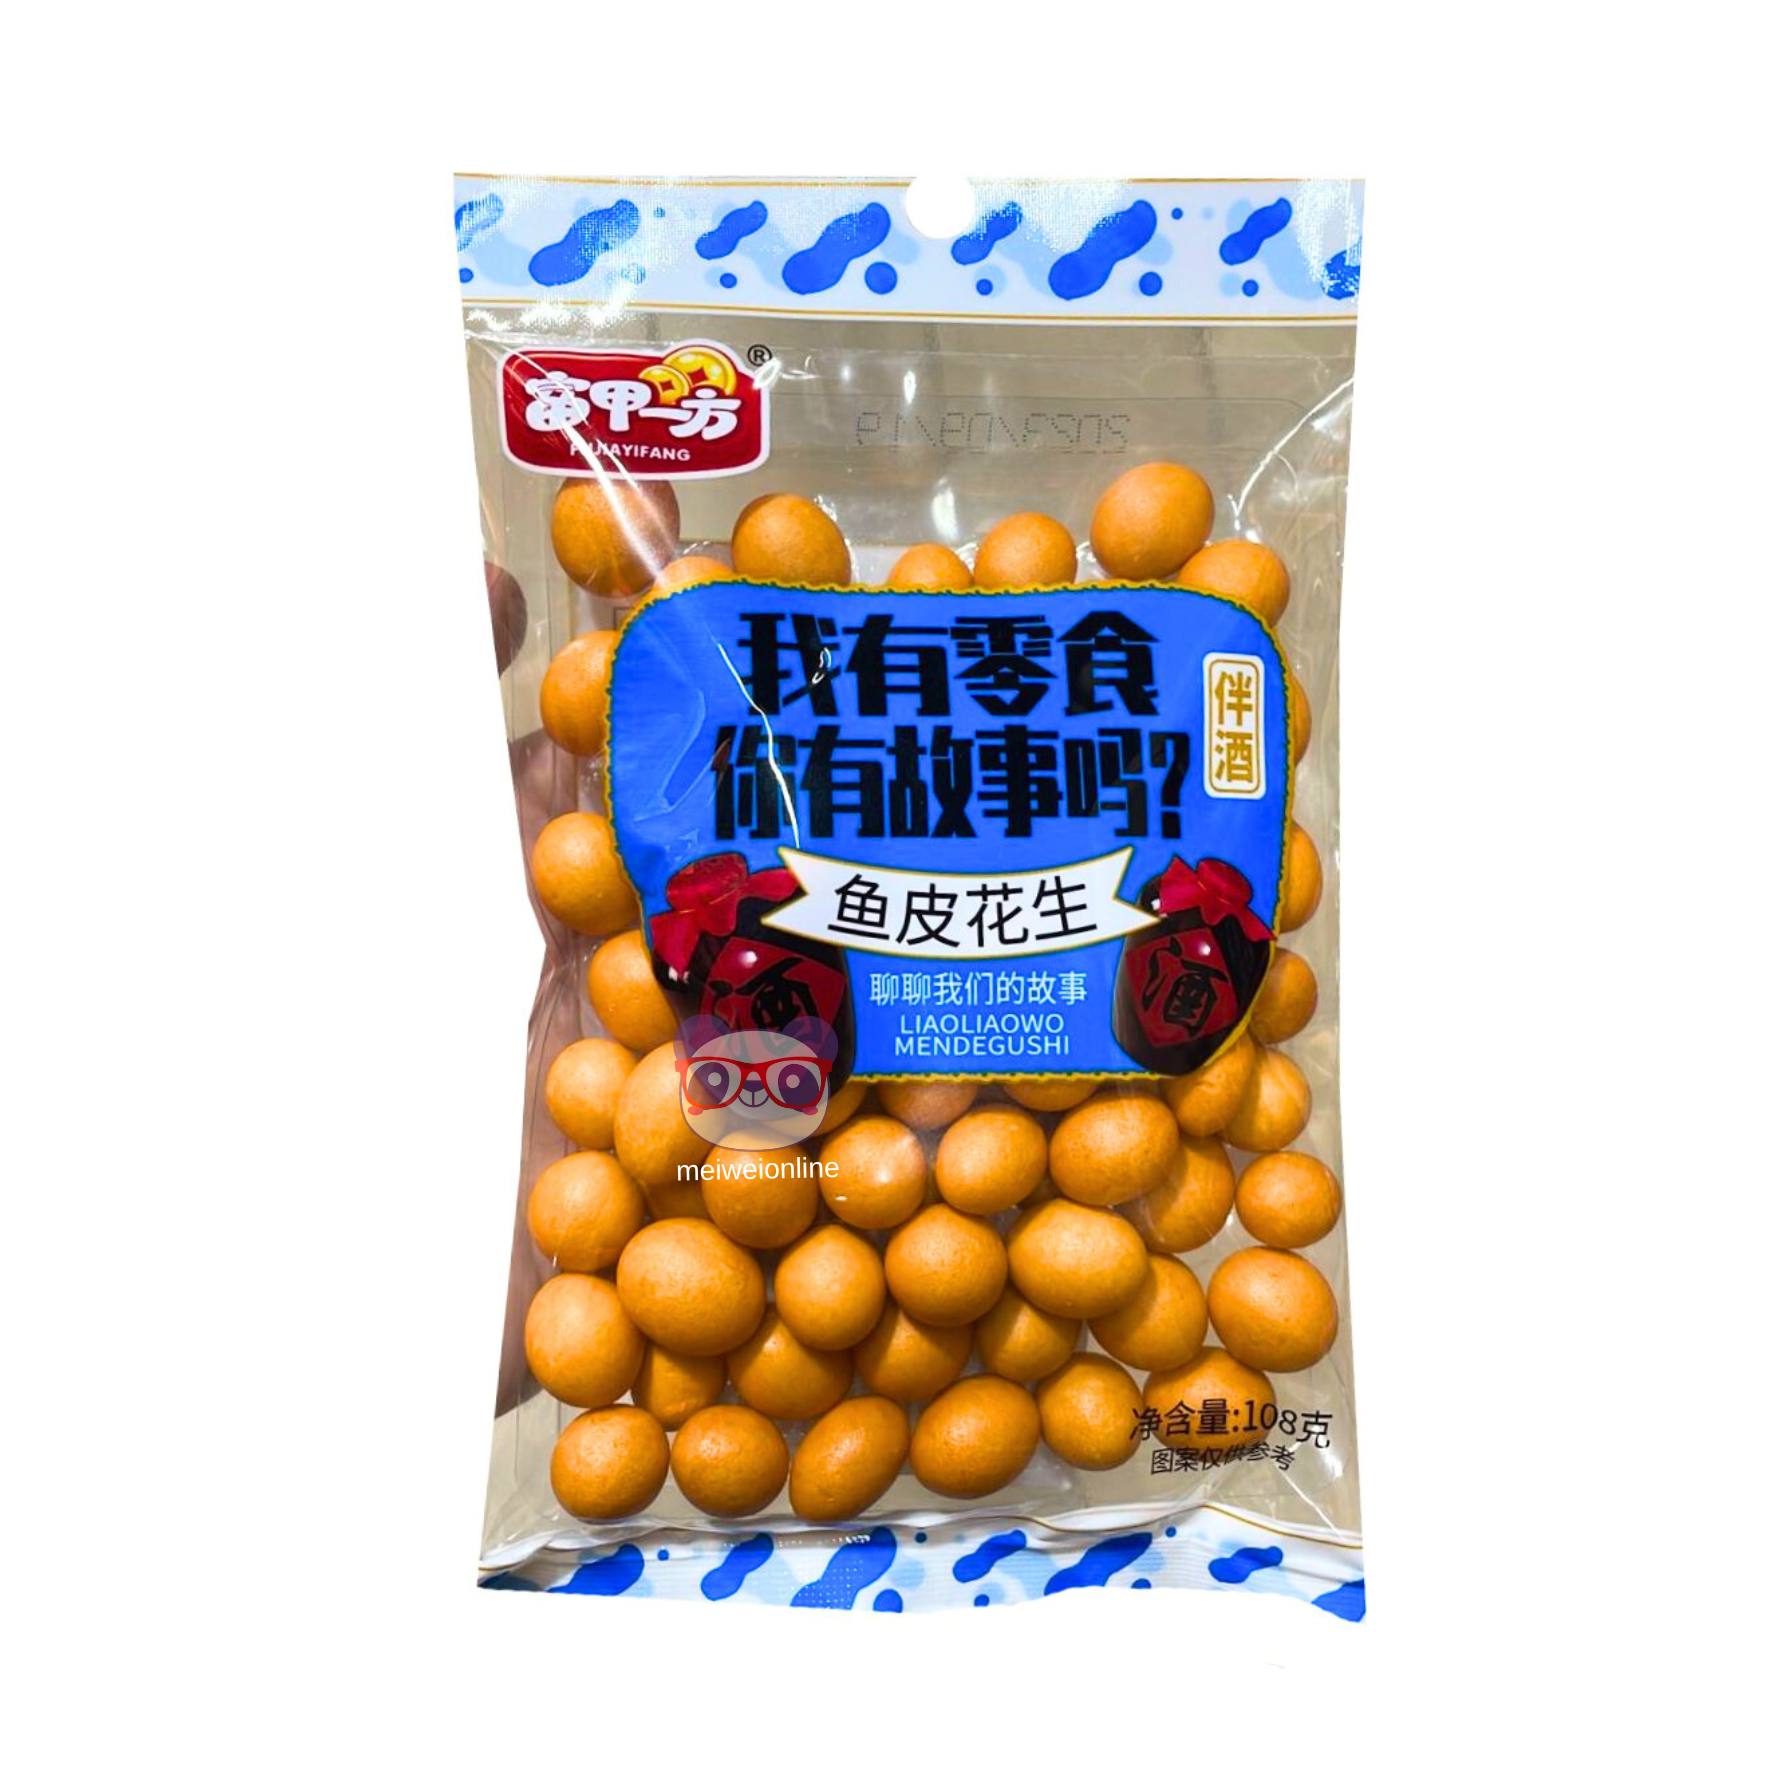 Amendoim sabor pele de peixe - Fujiayifang 108g